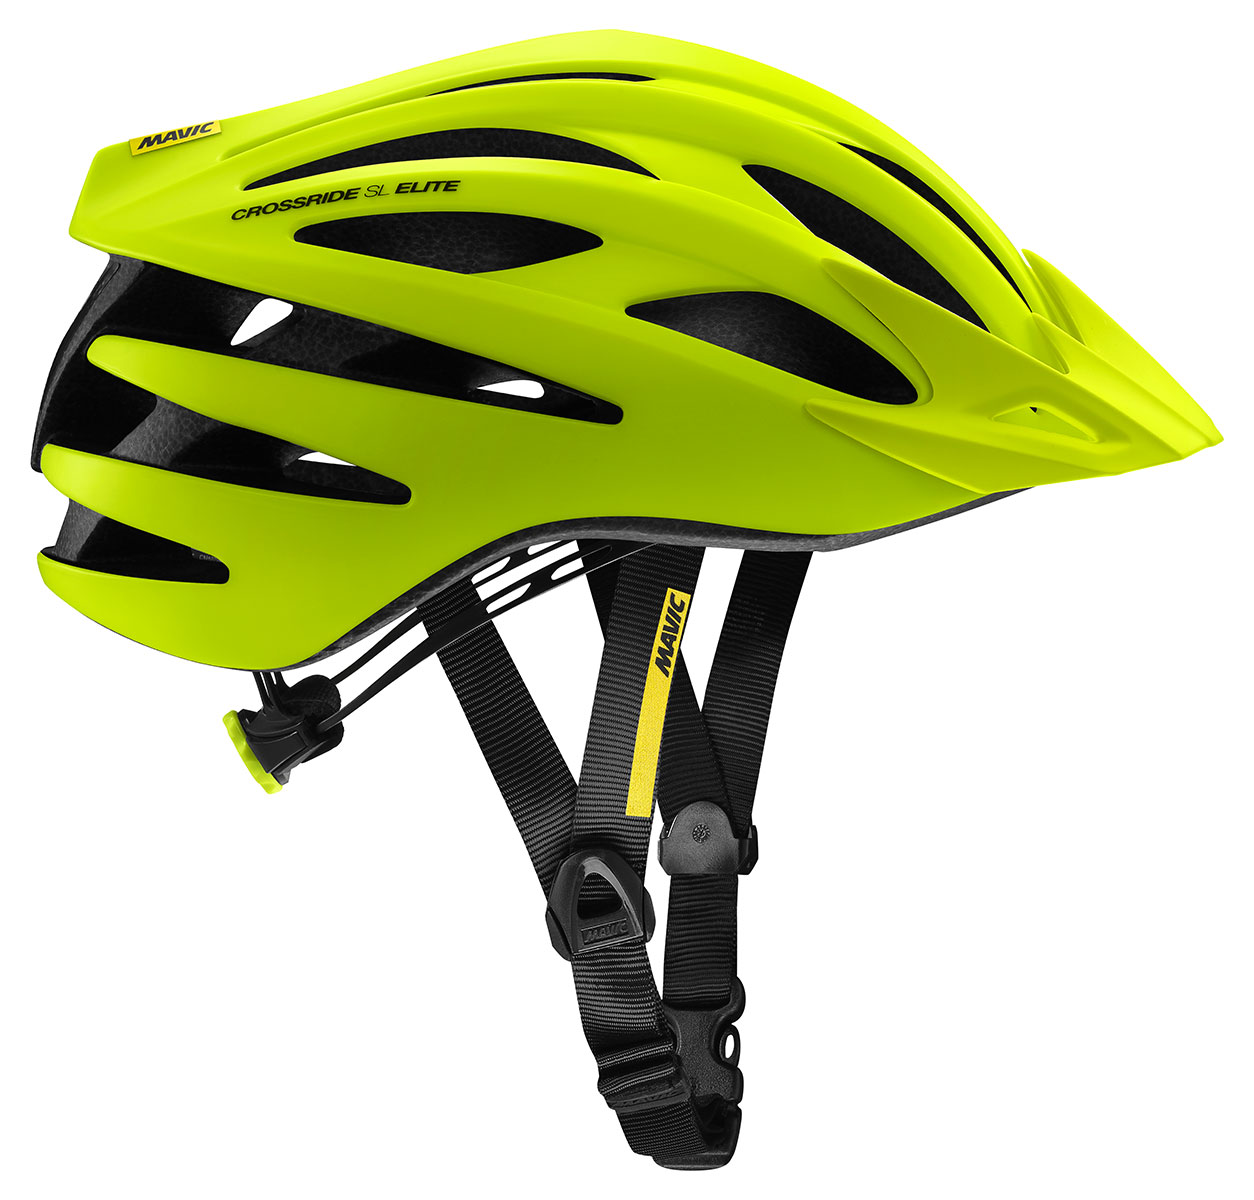 Lehká výkonnostní cyklistická helma Mavic Crossride SL Elite Safety Yellow/Black M